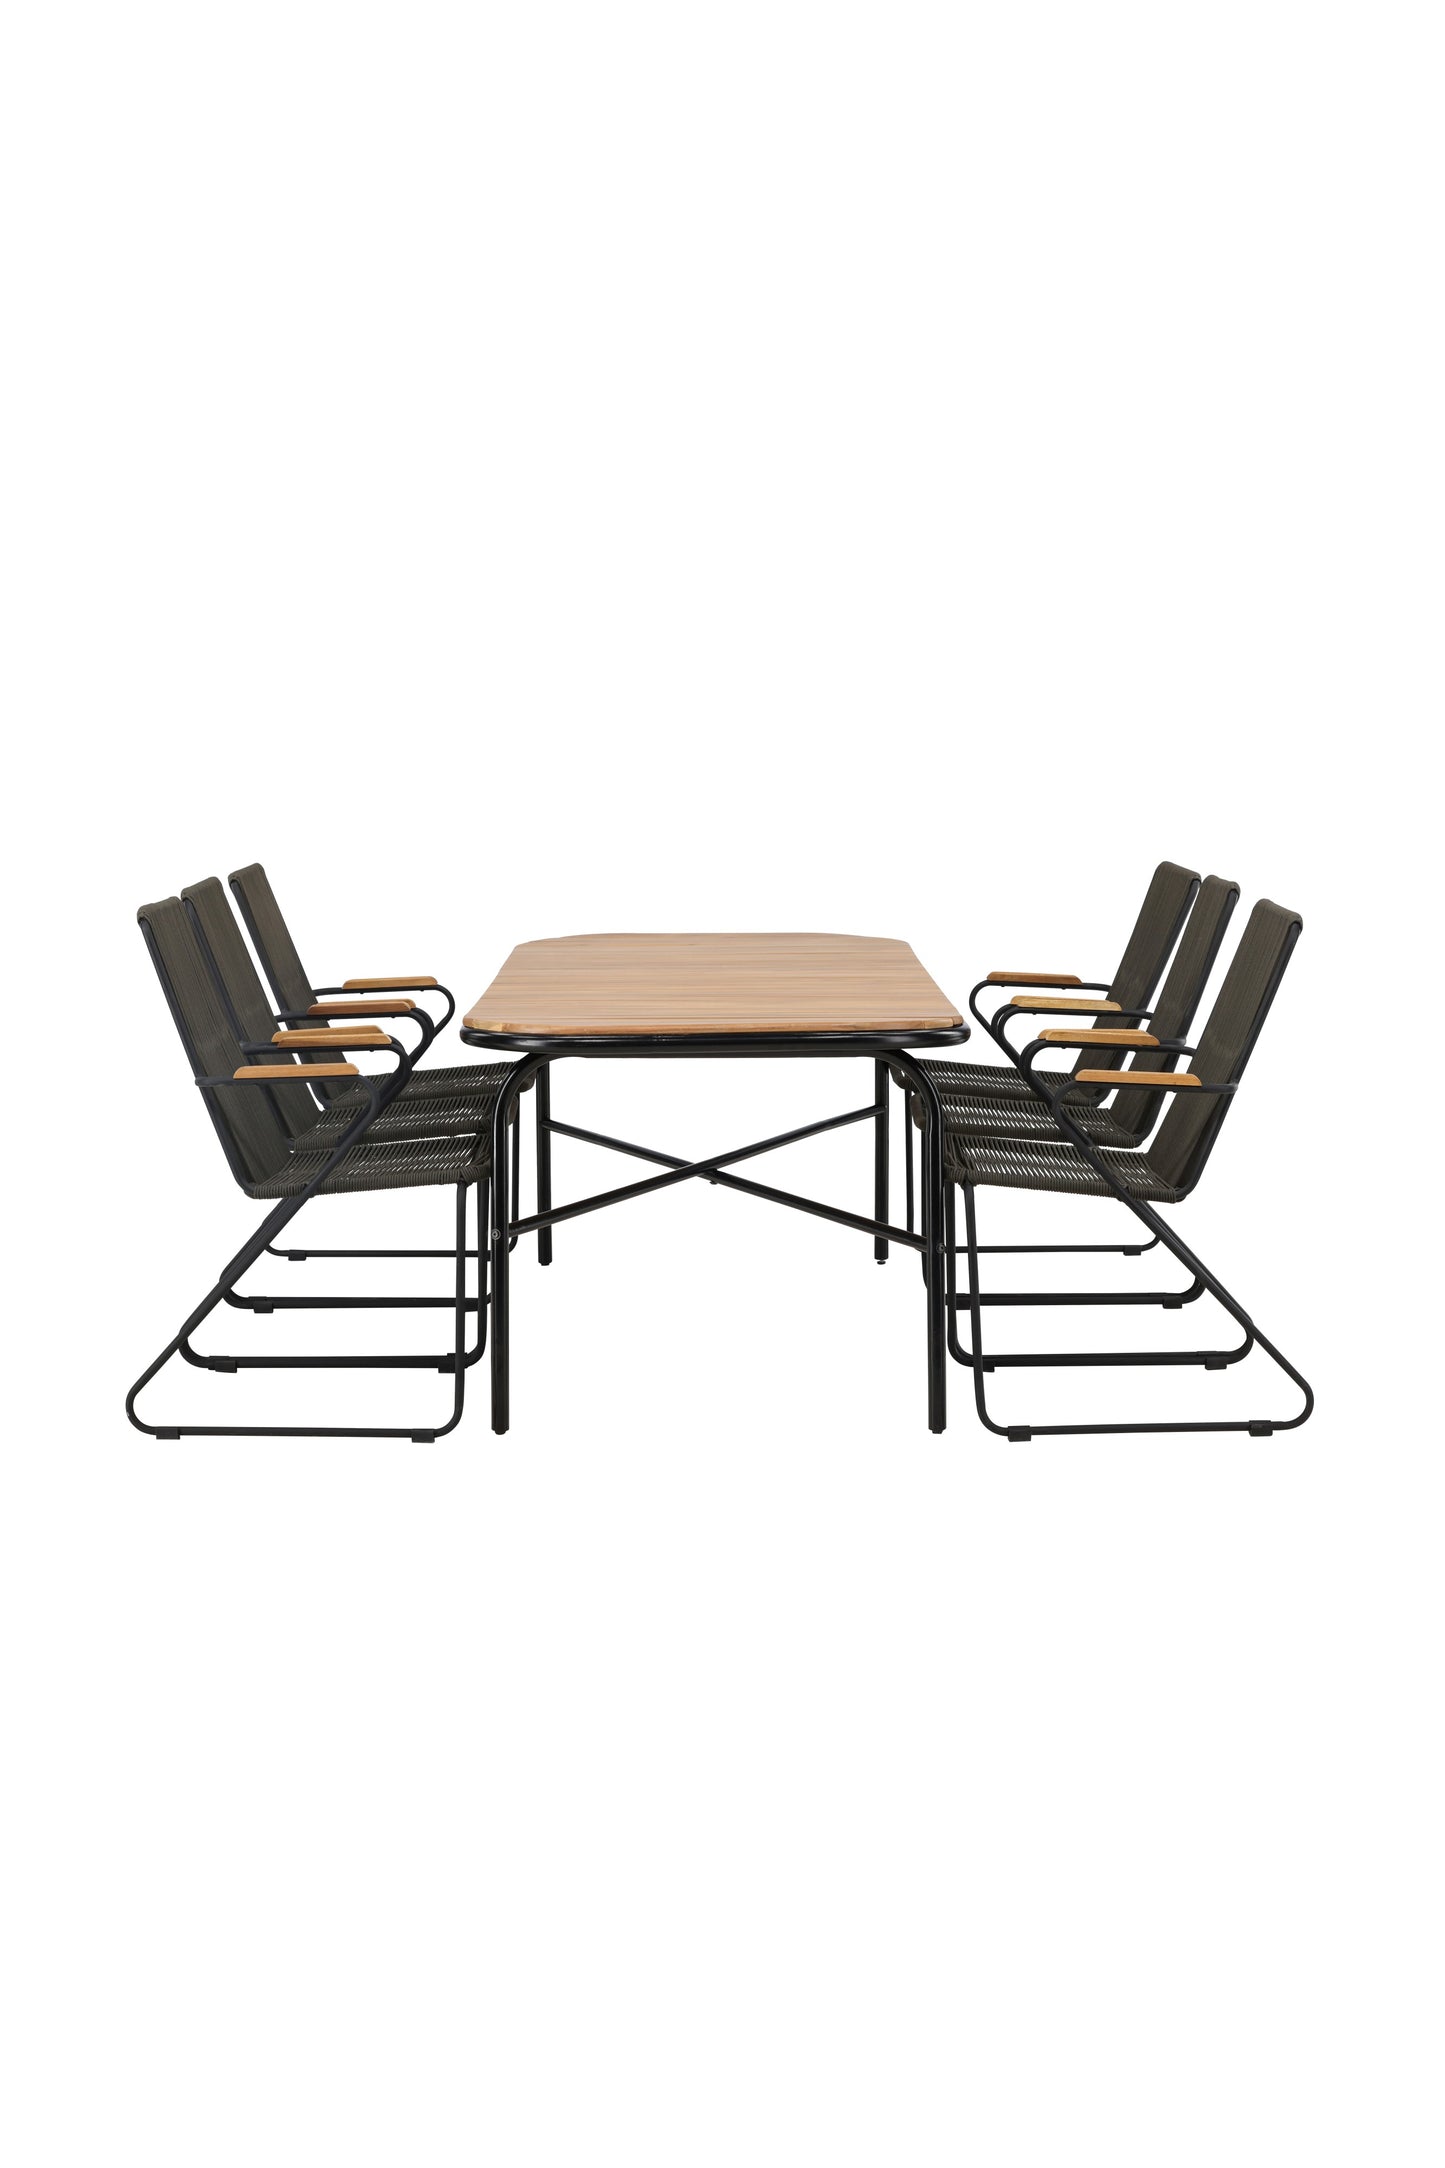 Holmbeck - Spisebord, Stål - Sort / Rektangulær 90*200*75 + Bois stol Stål - Sort / Mørkegråt Reb